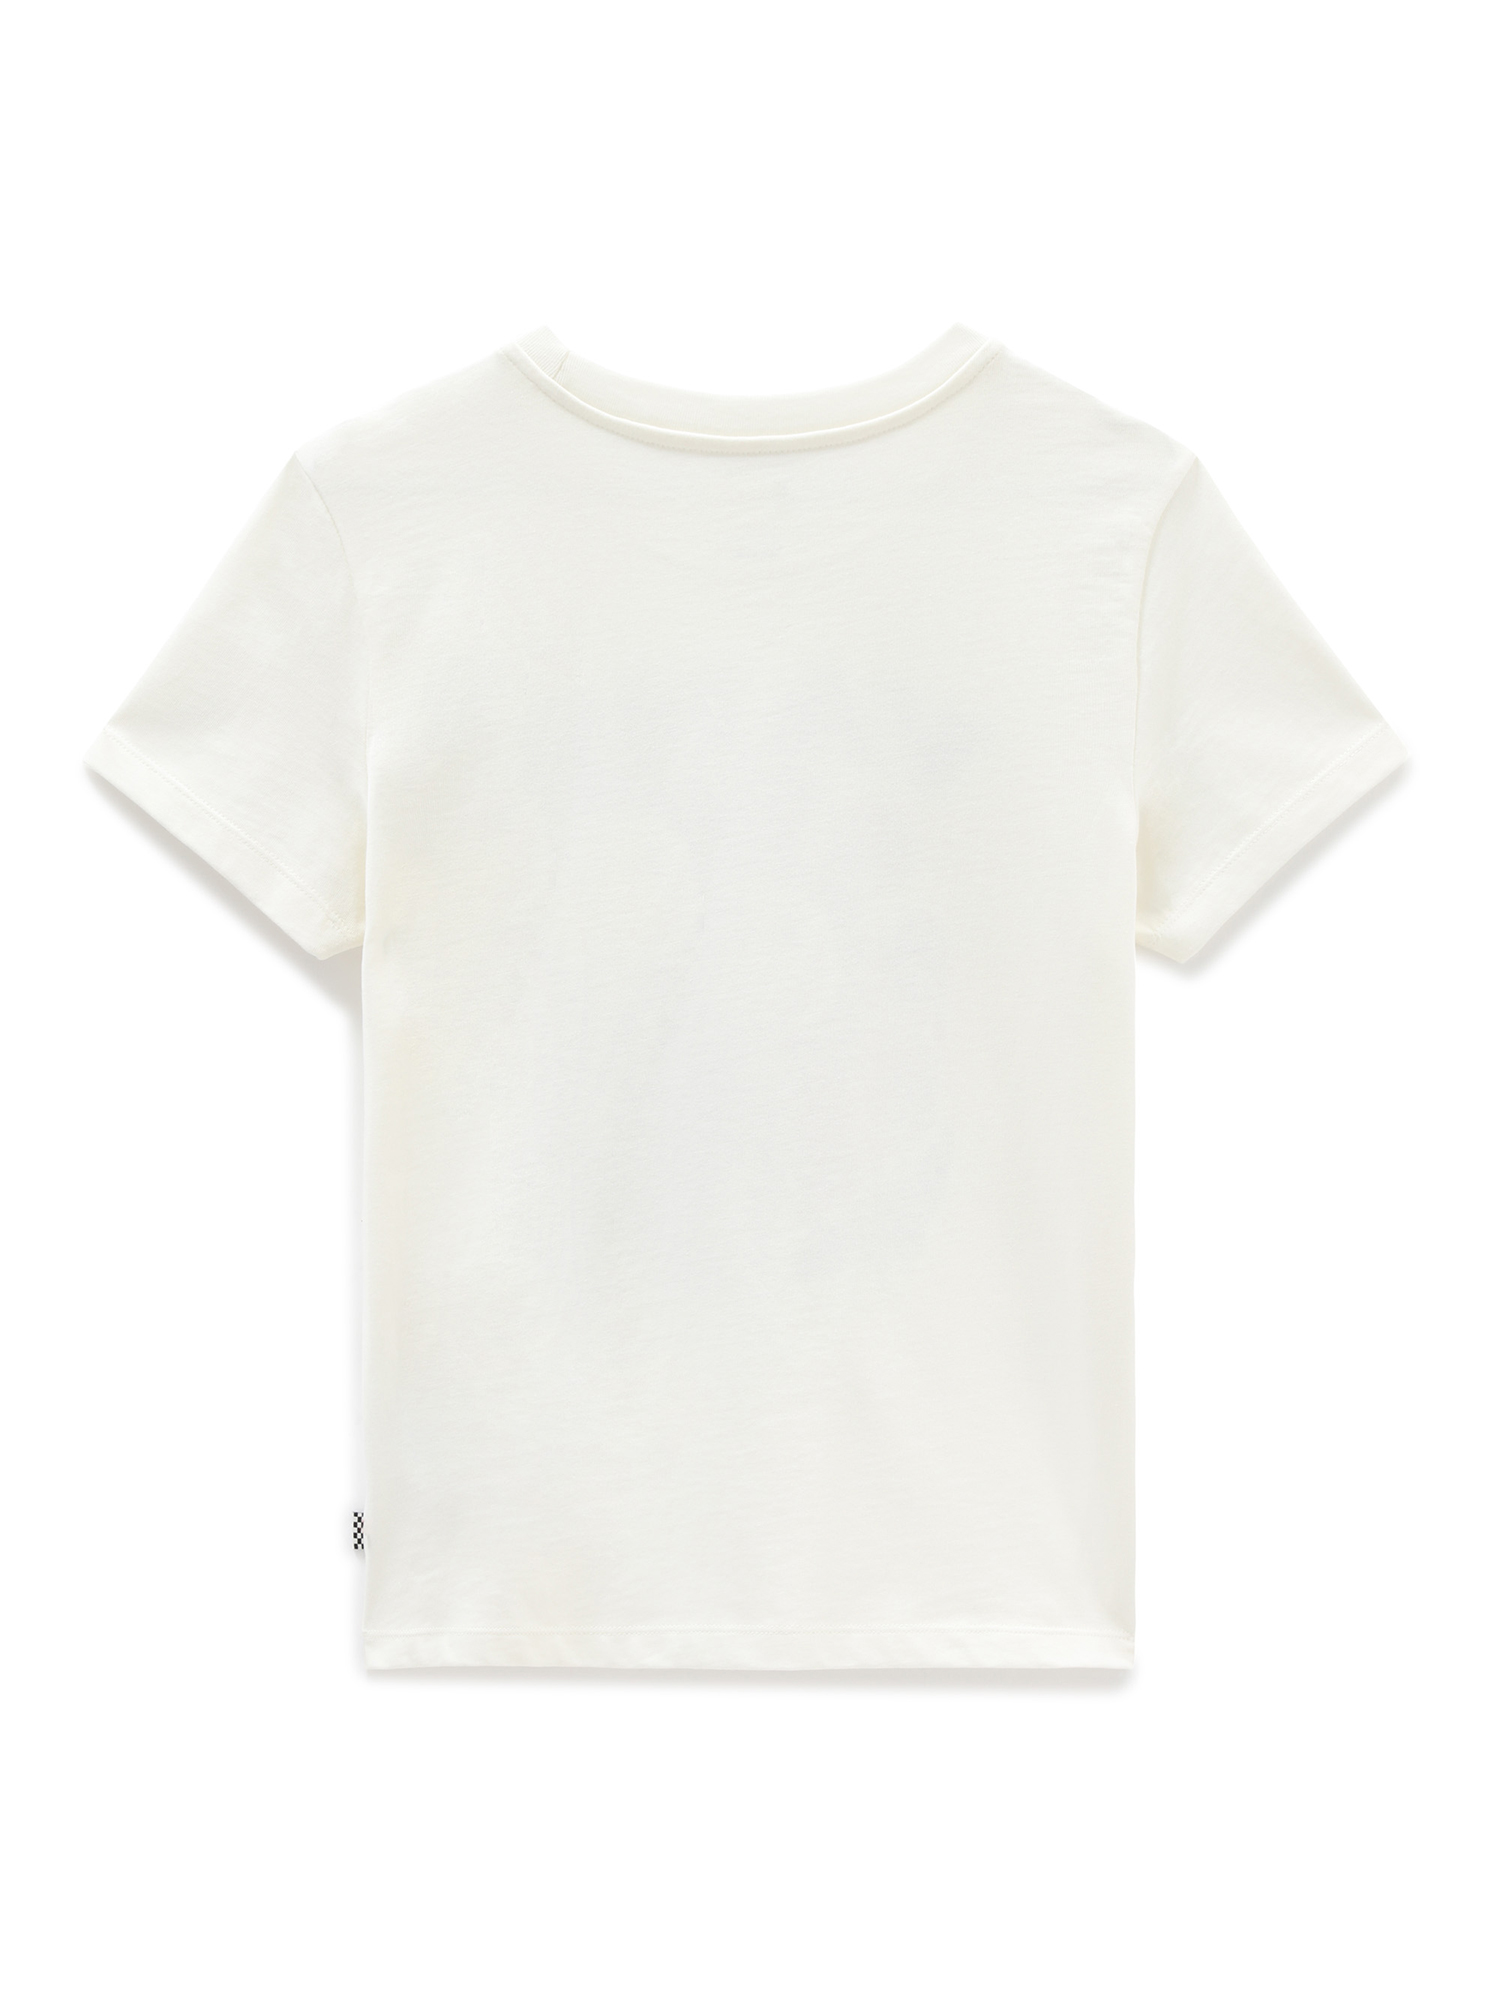 VANS Shirt MN STREET SPORT S/S in Weiß 